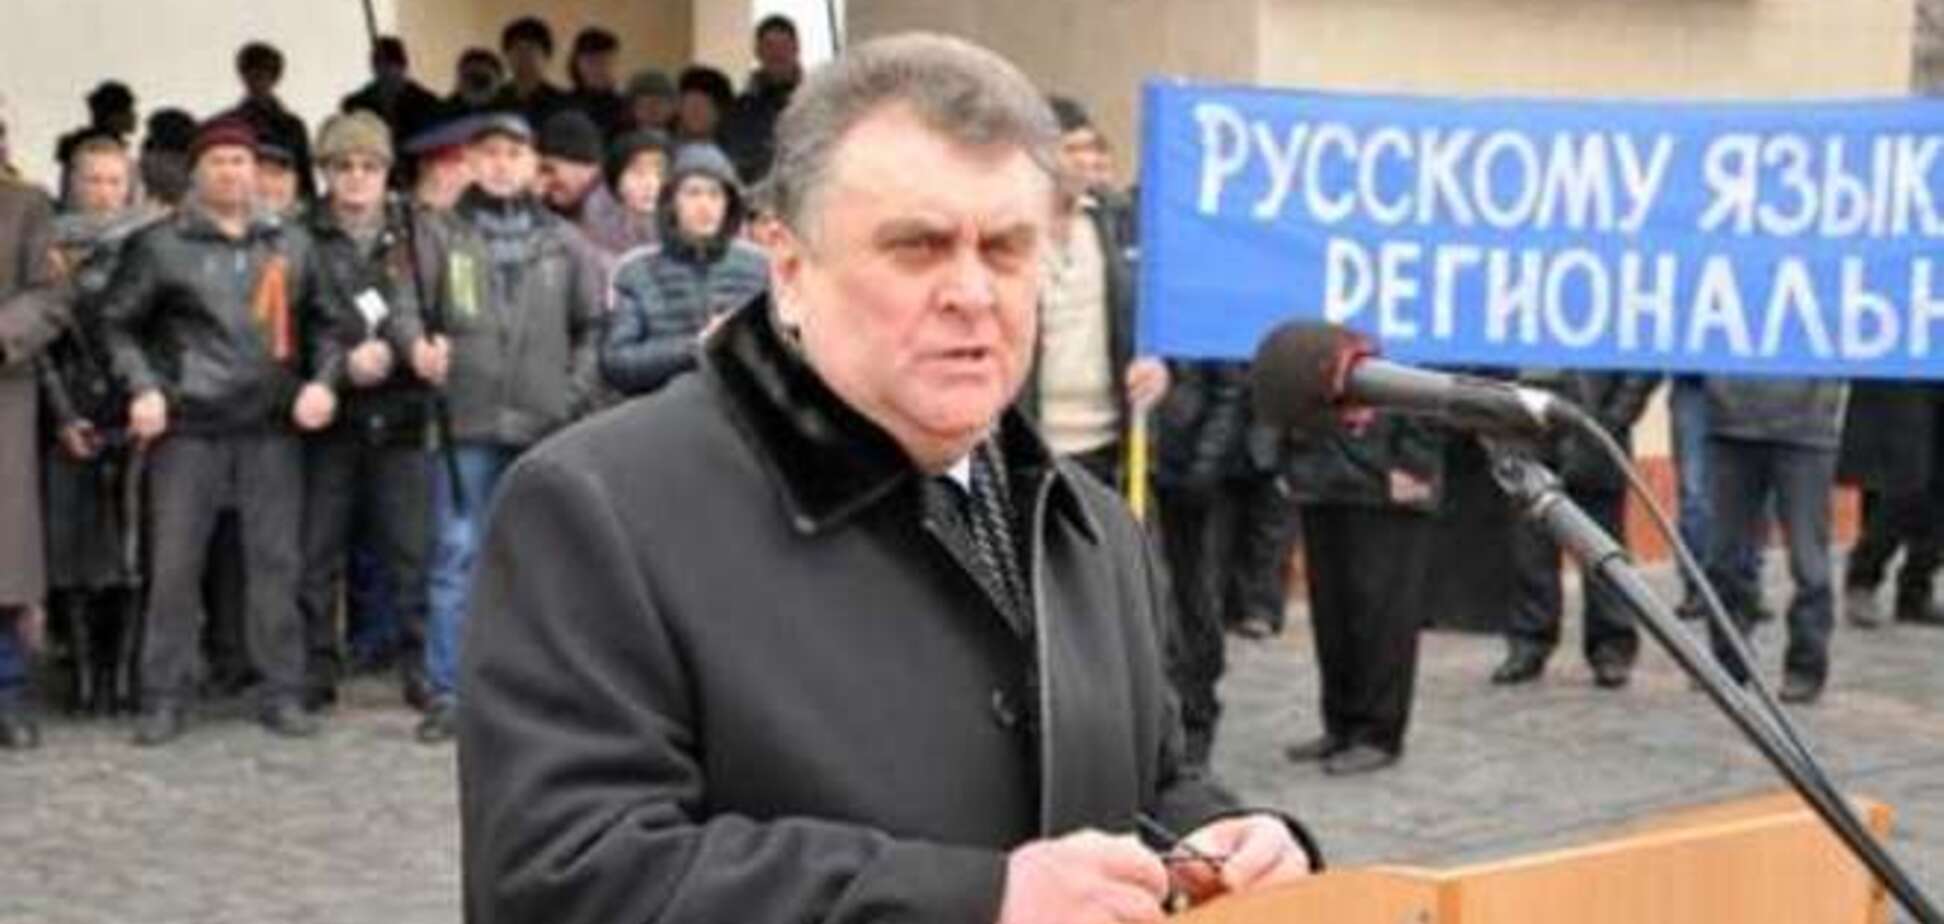 Пока в Свердловске умирают от голода, мэр-сепаратист поехал переоформлять пенсию в Киев - СМИ